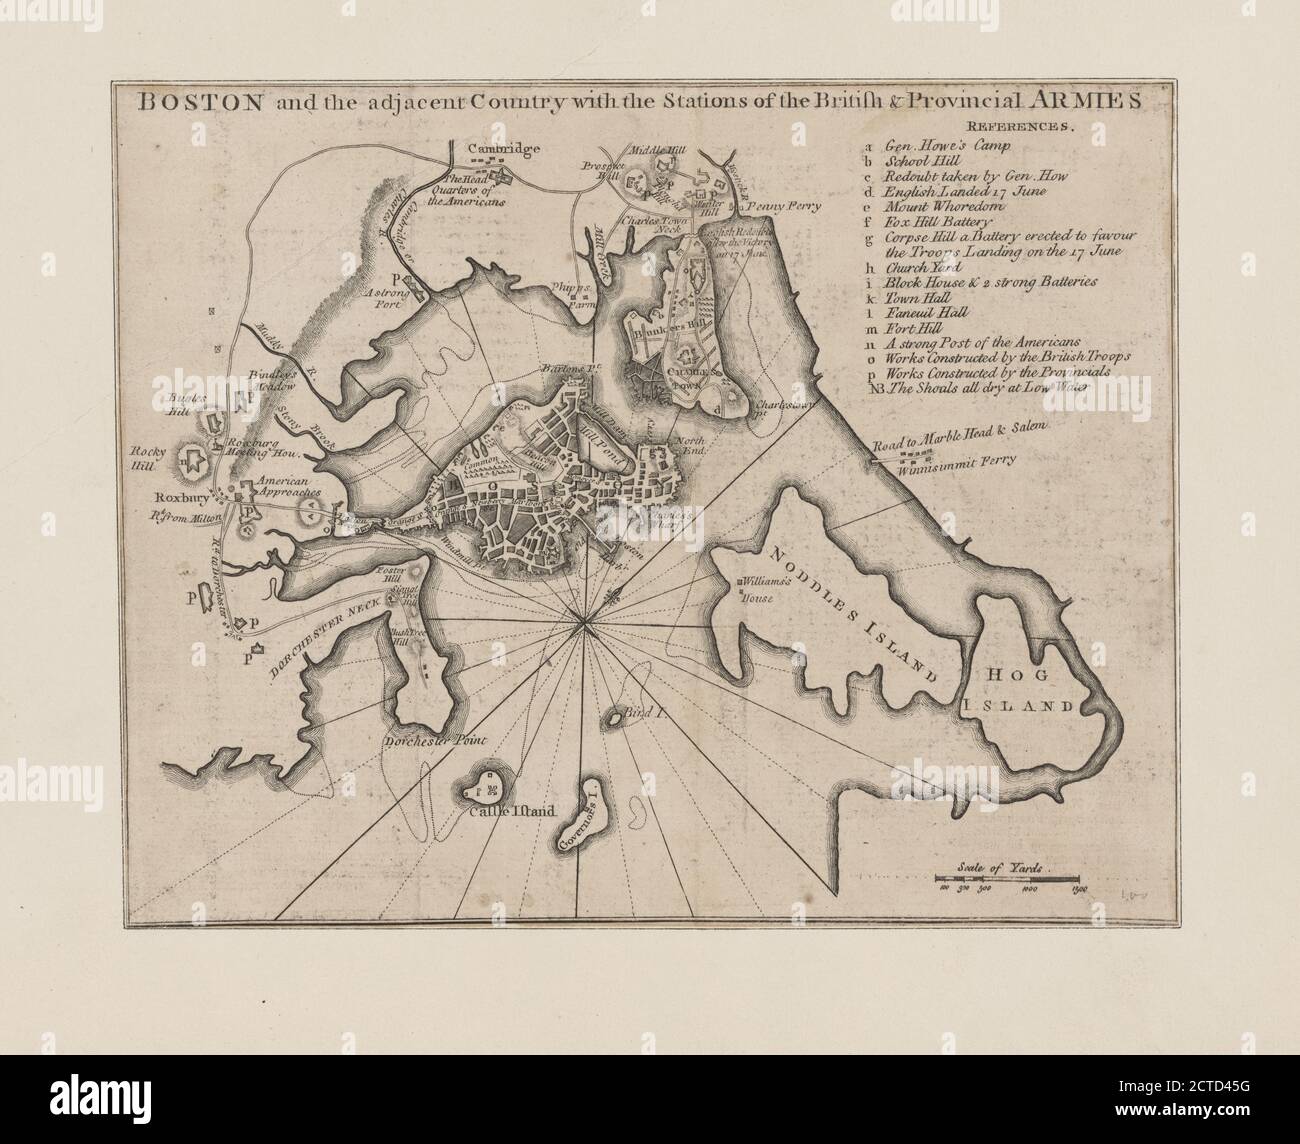 Boston et le pays voisin avec les stations des armées britanniques et provinciales, cartographie, cartes, 1775 Banque D'Images